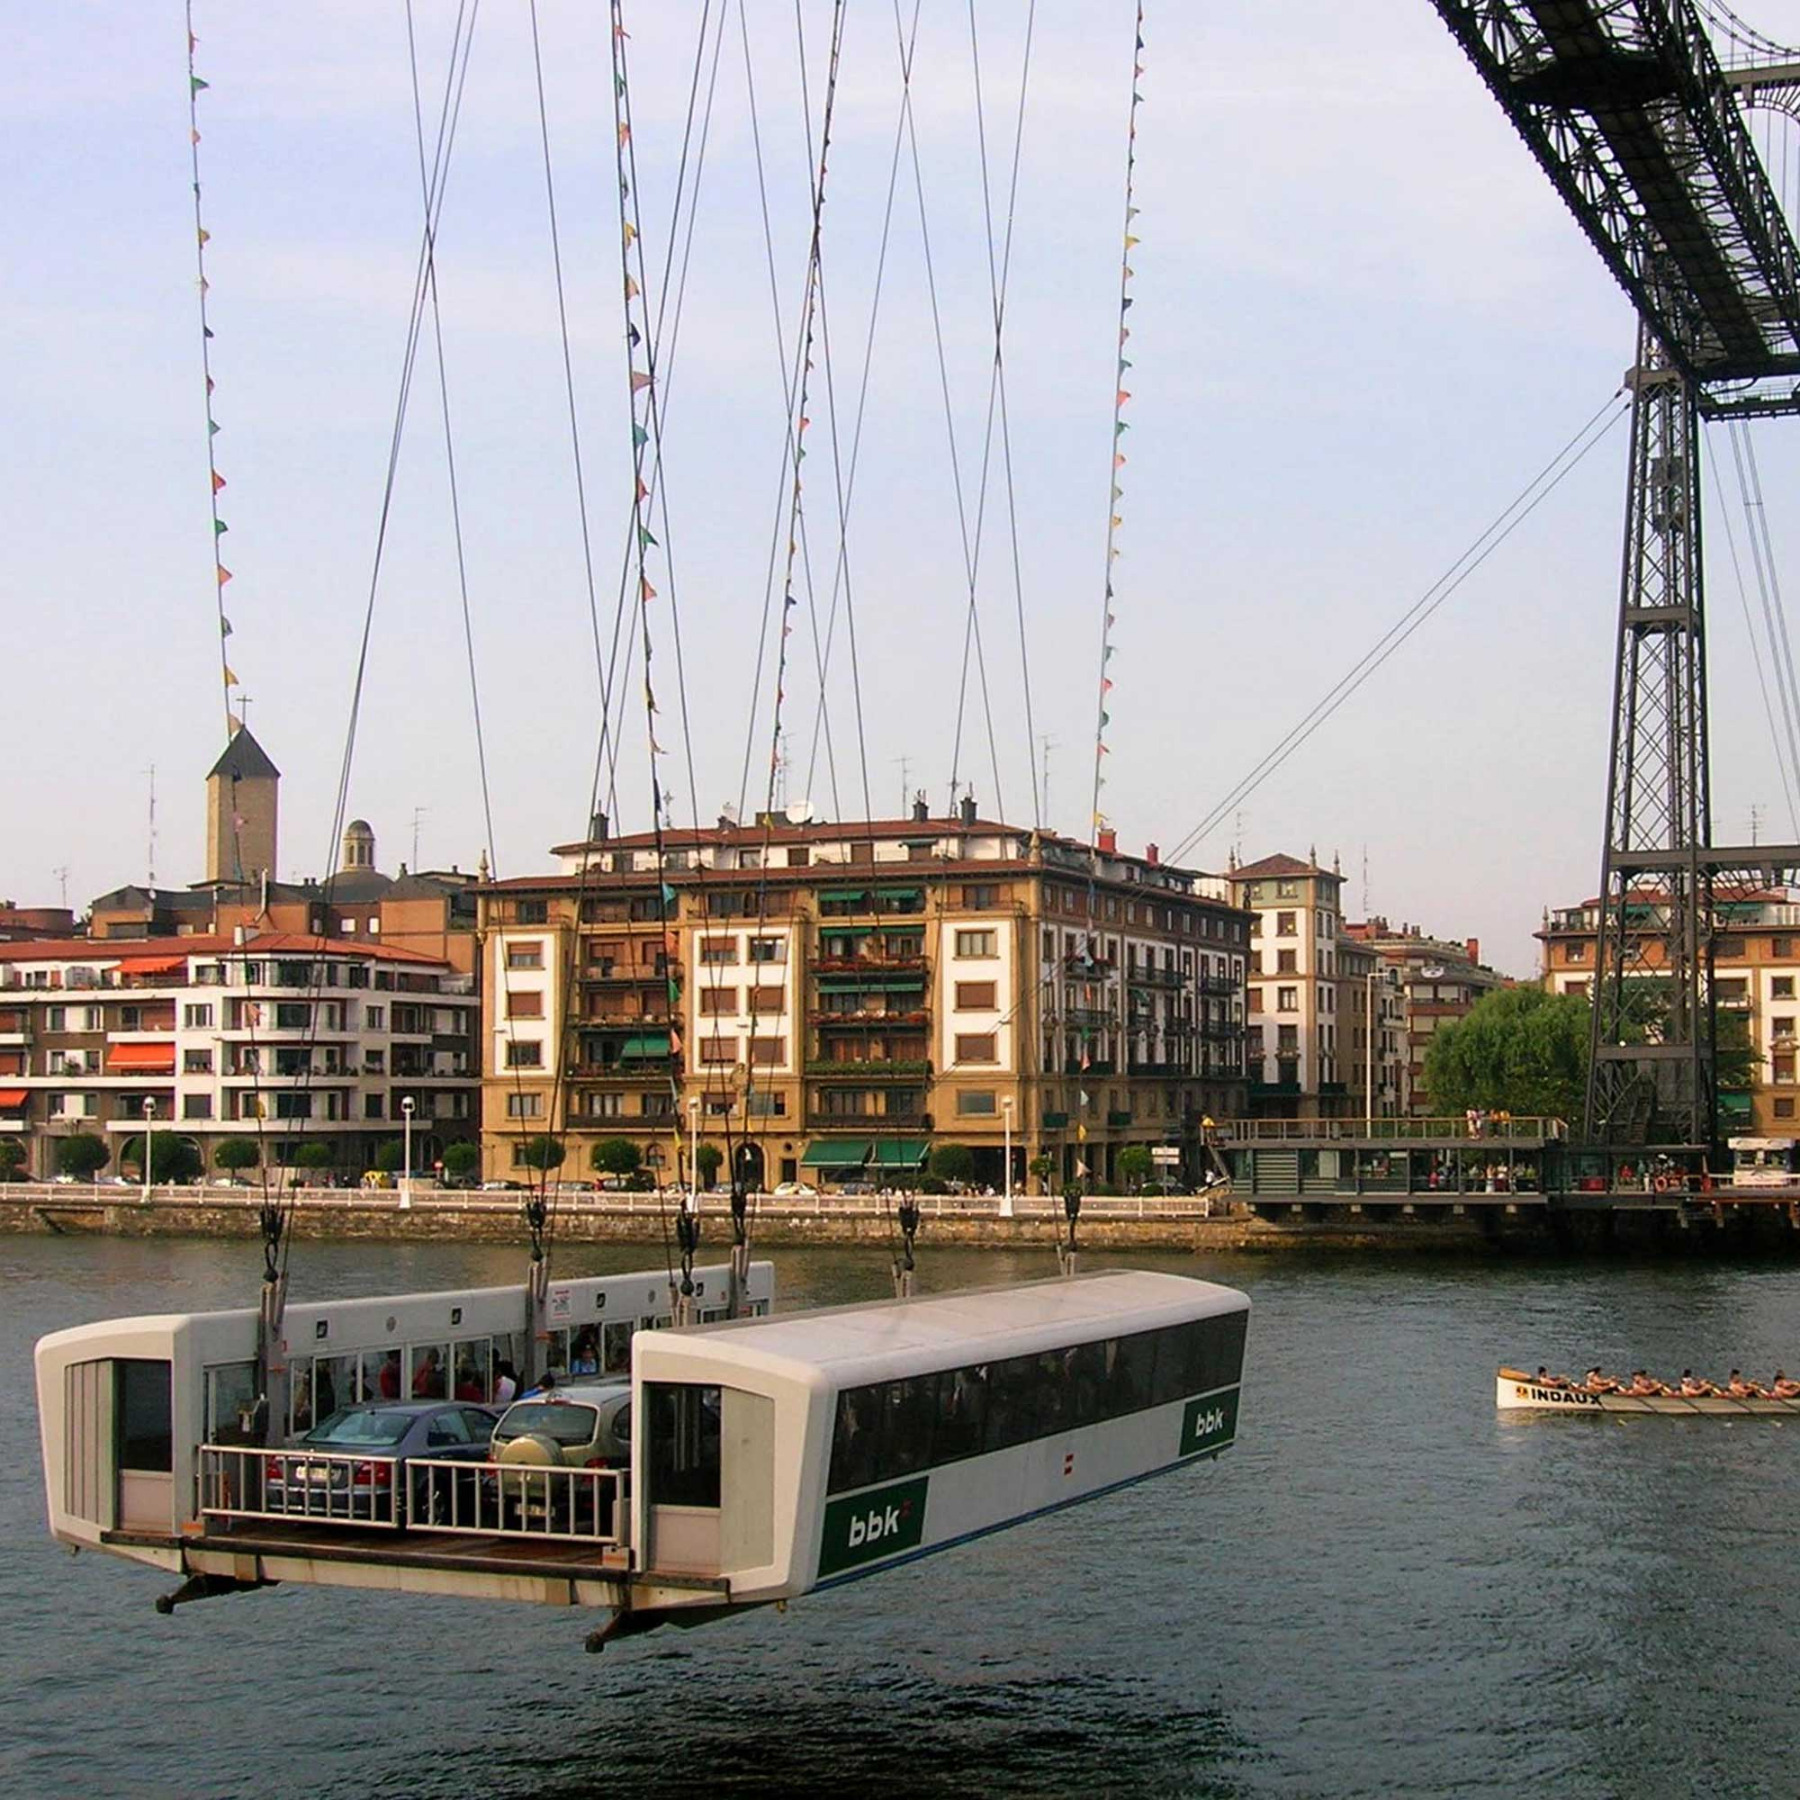 Älteste Schwebefähre der Welt in Bilbao